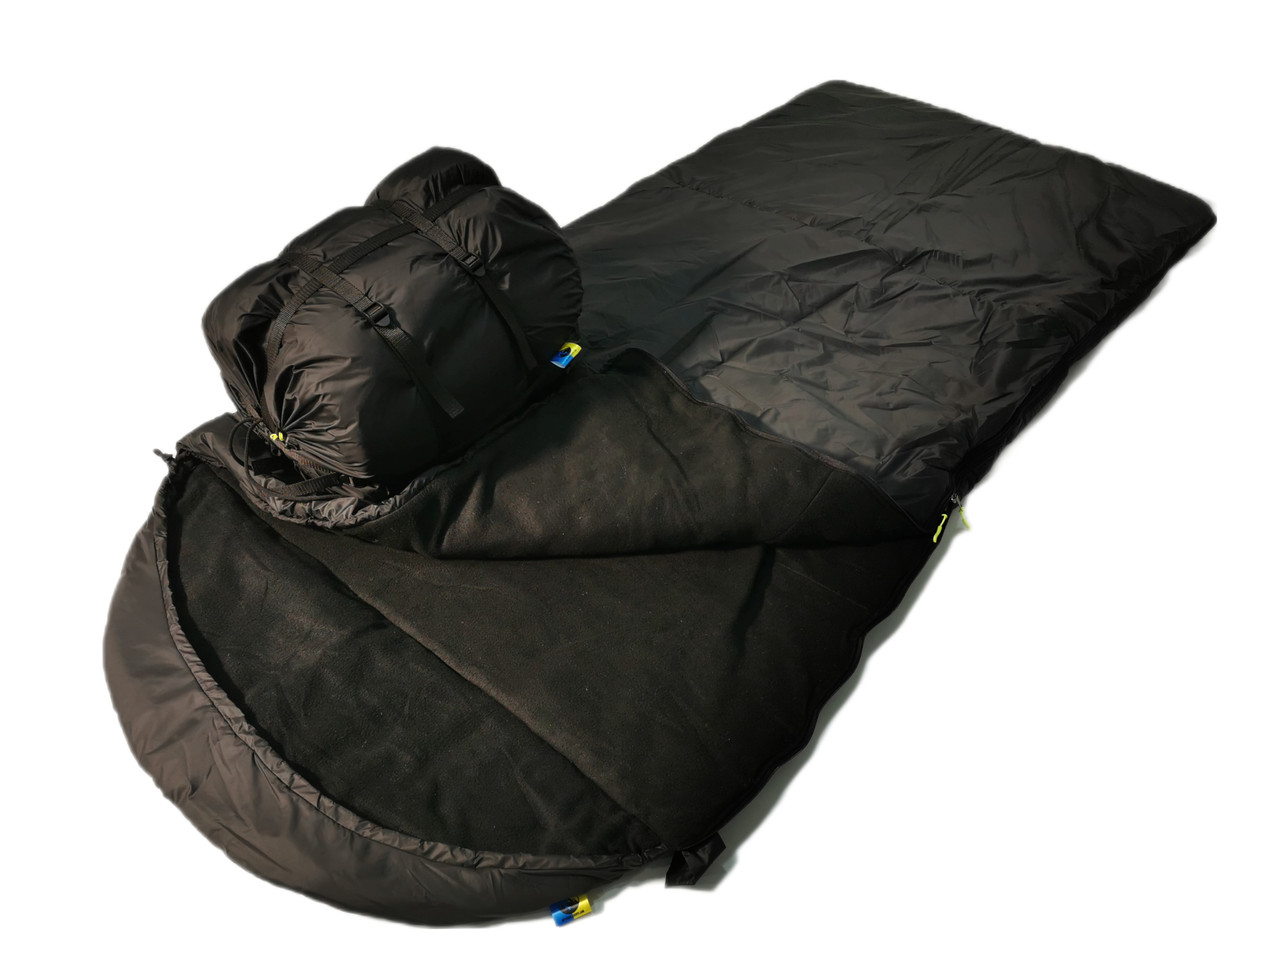 Теплий широкий спальний мішок (до -20) спальник туристичний для походу, для холодної погоди!